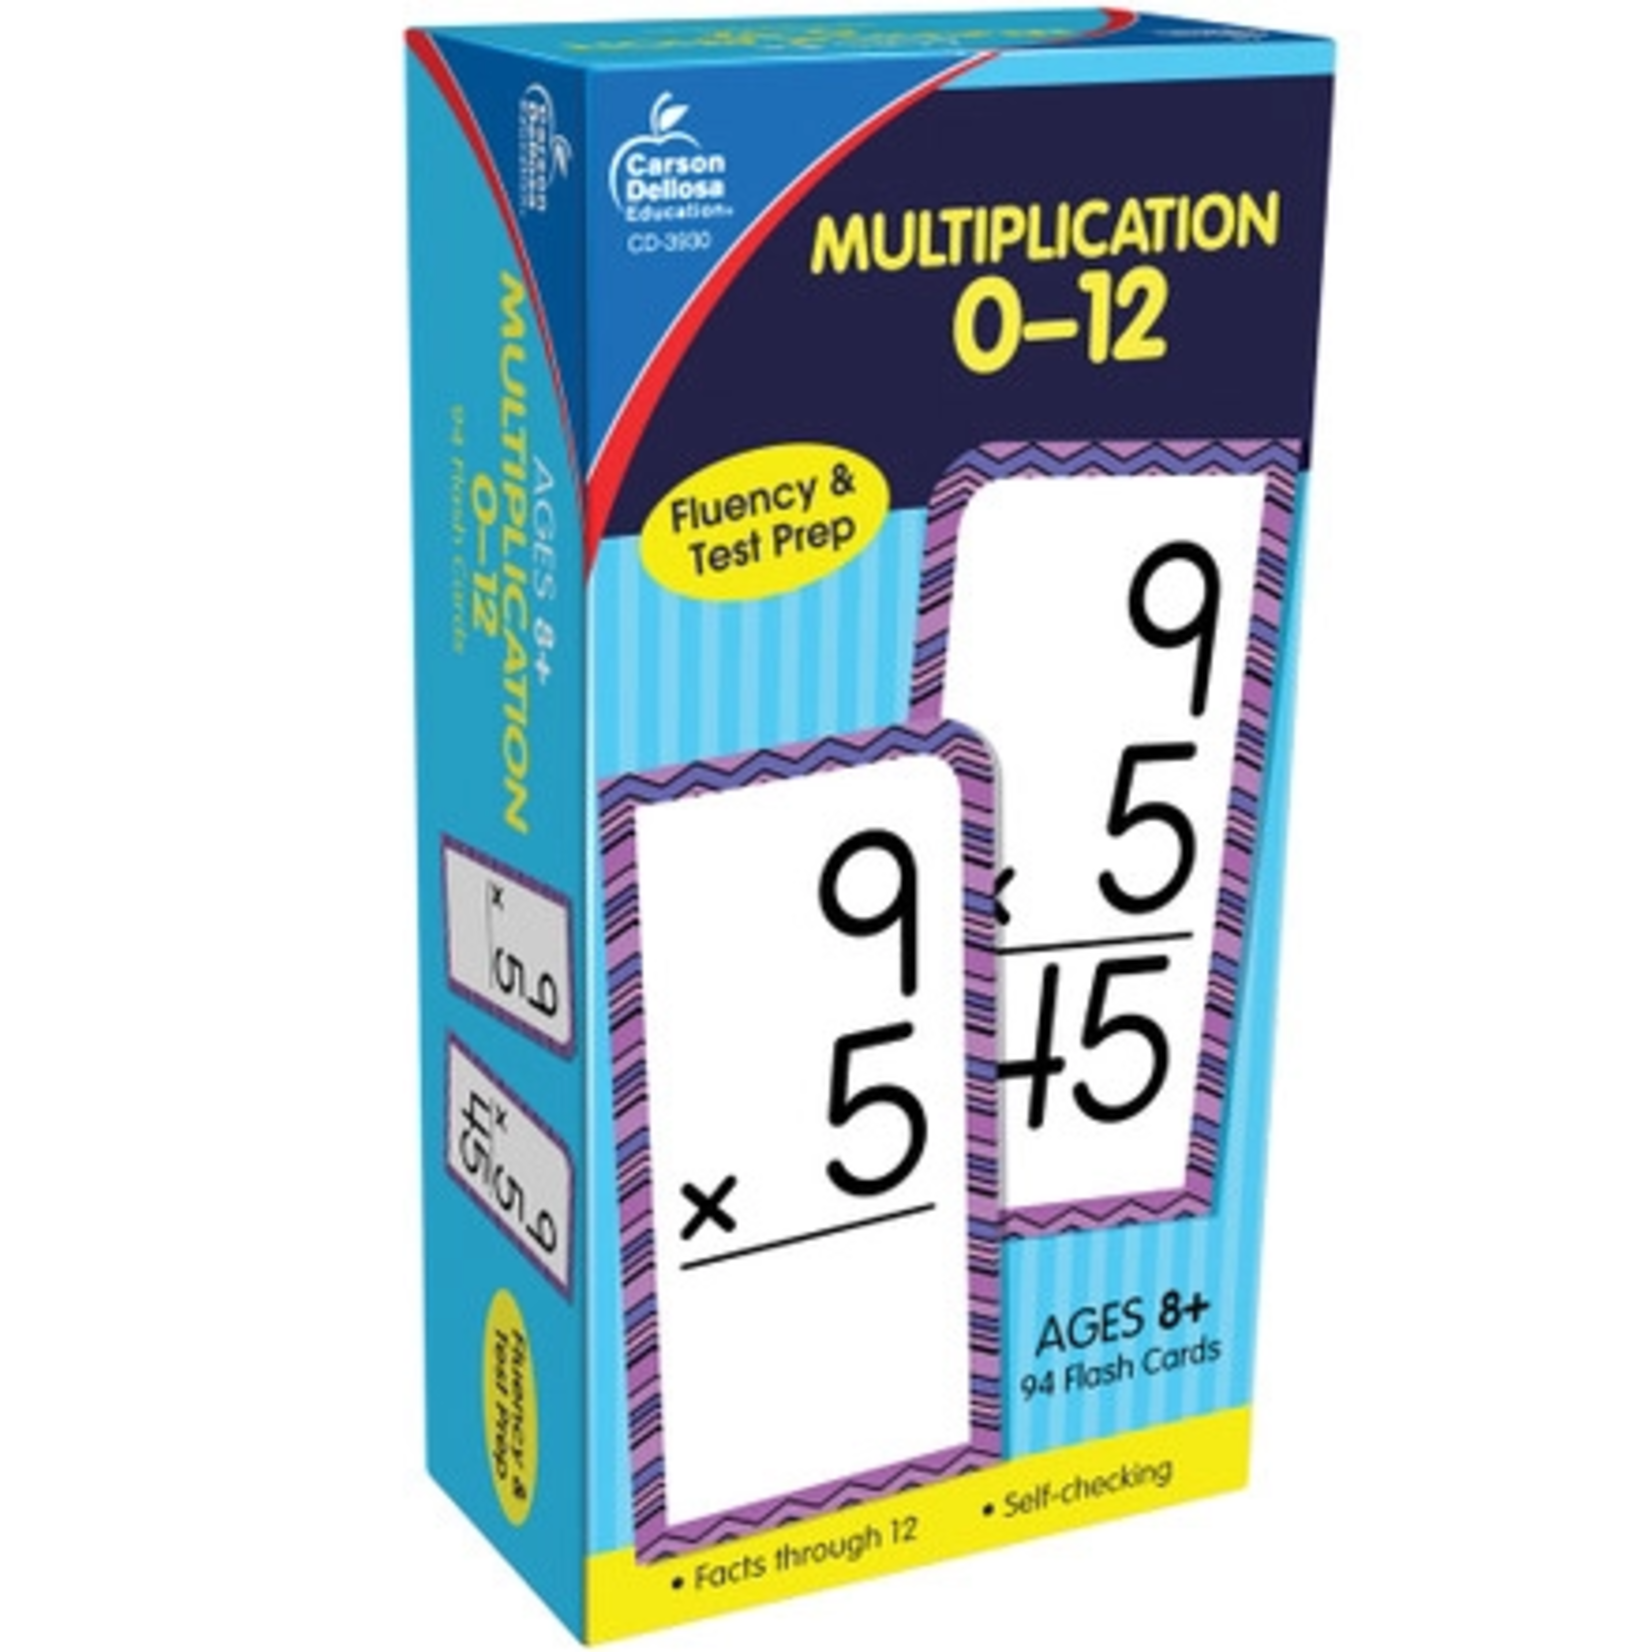 CARSON DELLOSA PUBLISHING CO Multiplication 0-12 Flash Cards Grade 3-5